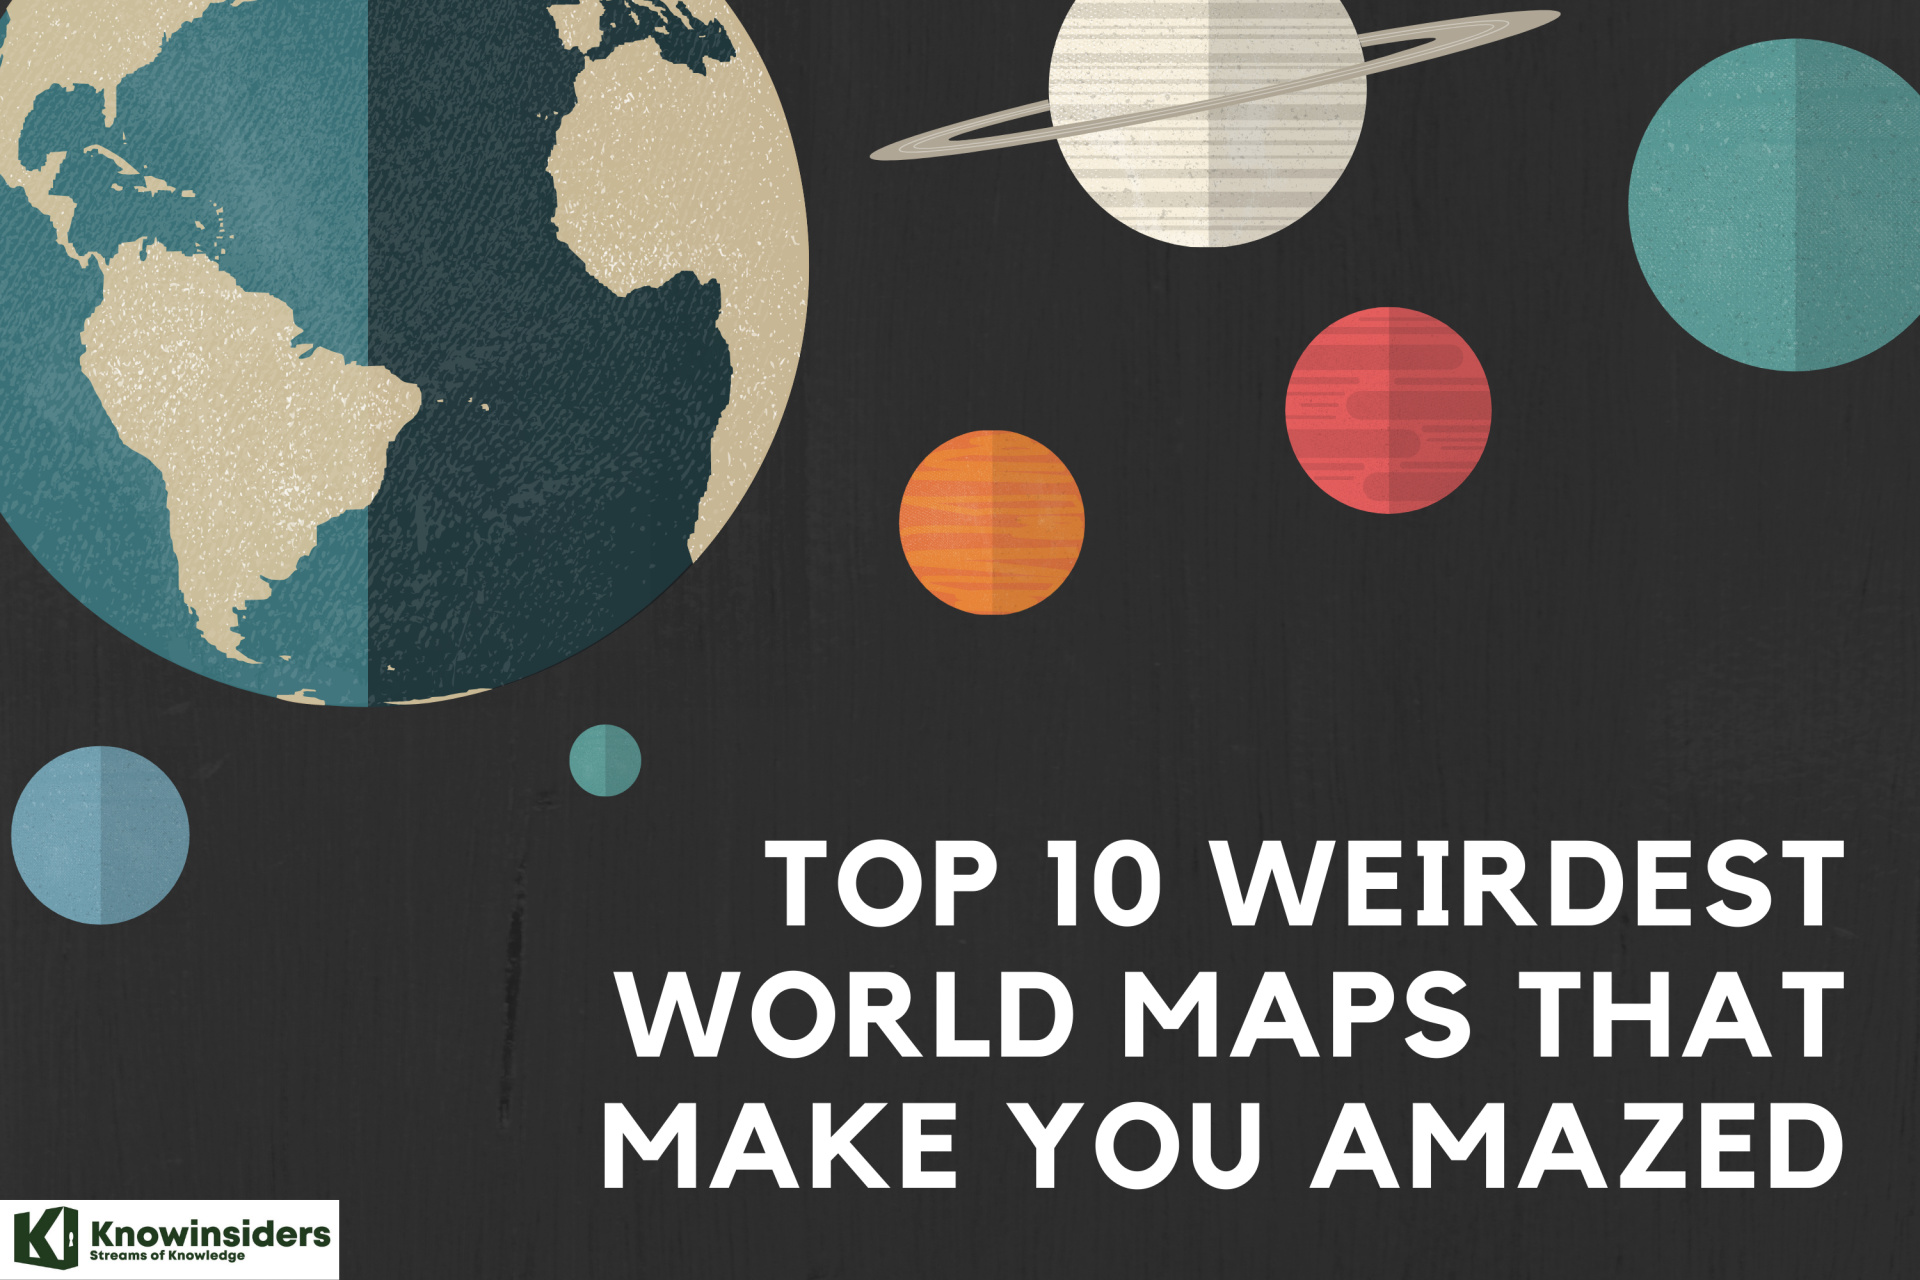 Top 10 Weirdest World Maps That Make You Amazed